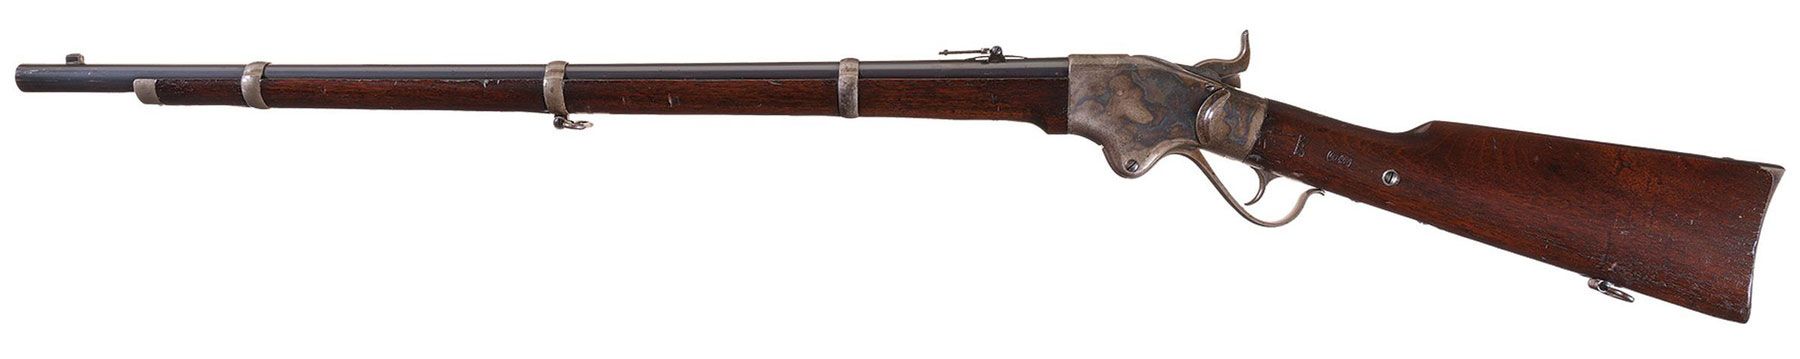 Spencer rifle Model 1860